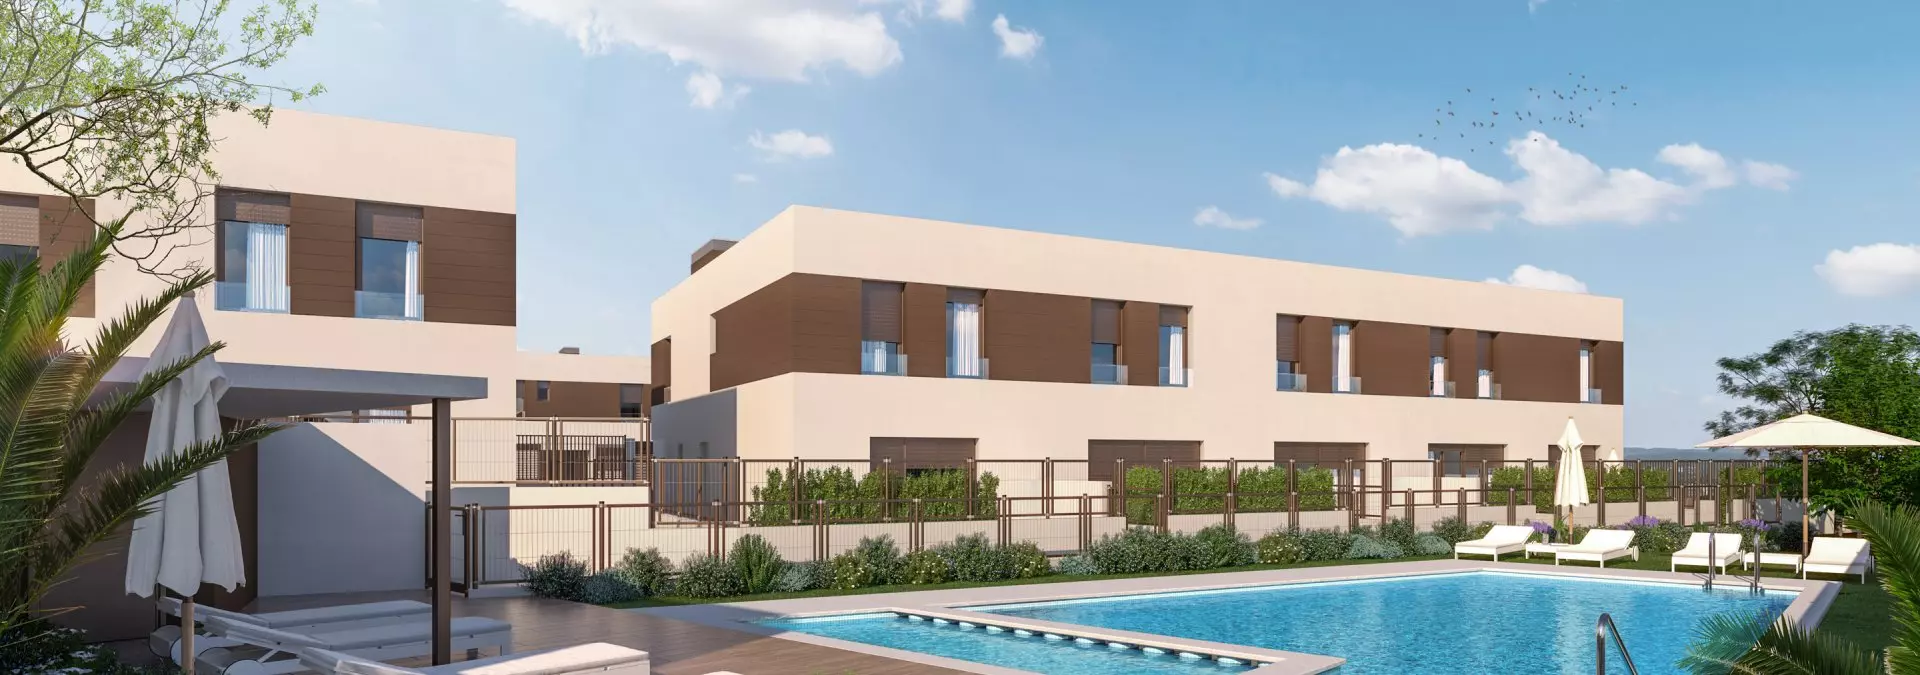 Viviendas con piscina comunitaria y terrazas en Valencia de Culmia